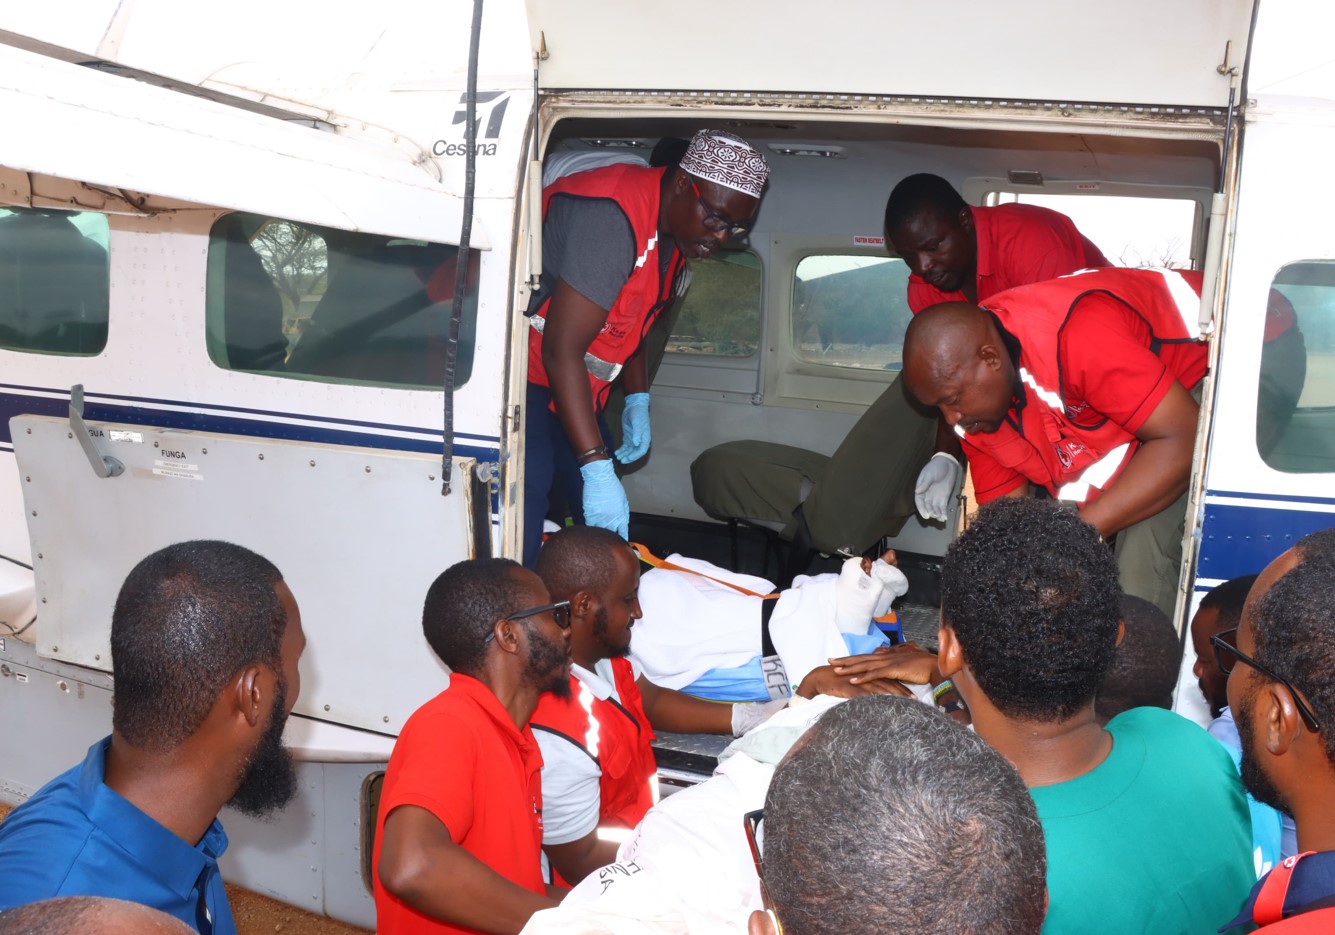 Mandera hotel attack victims airlifted to Nairobi